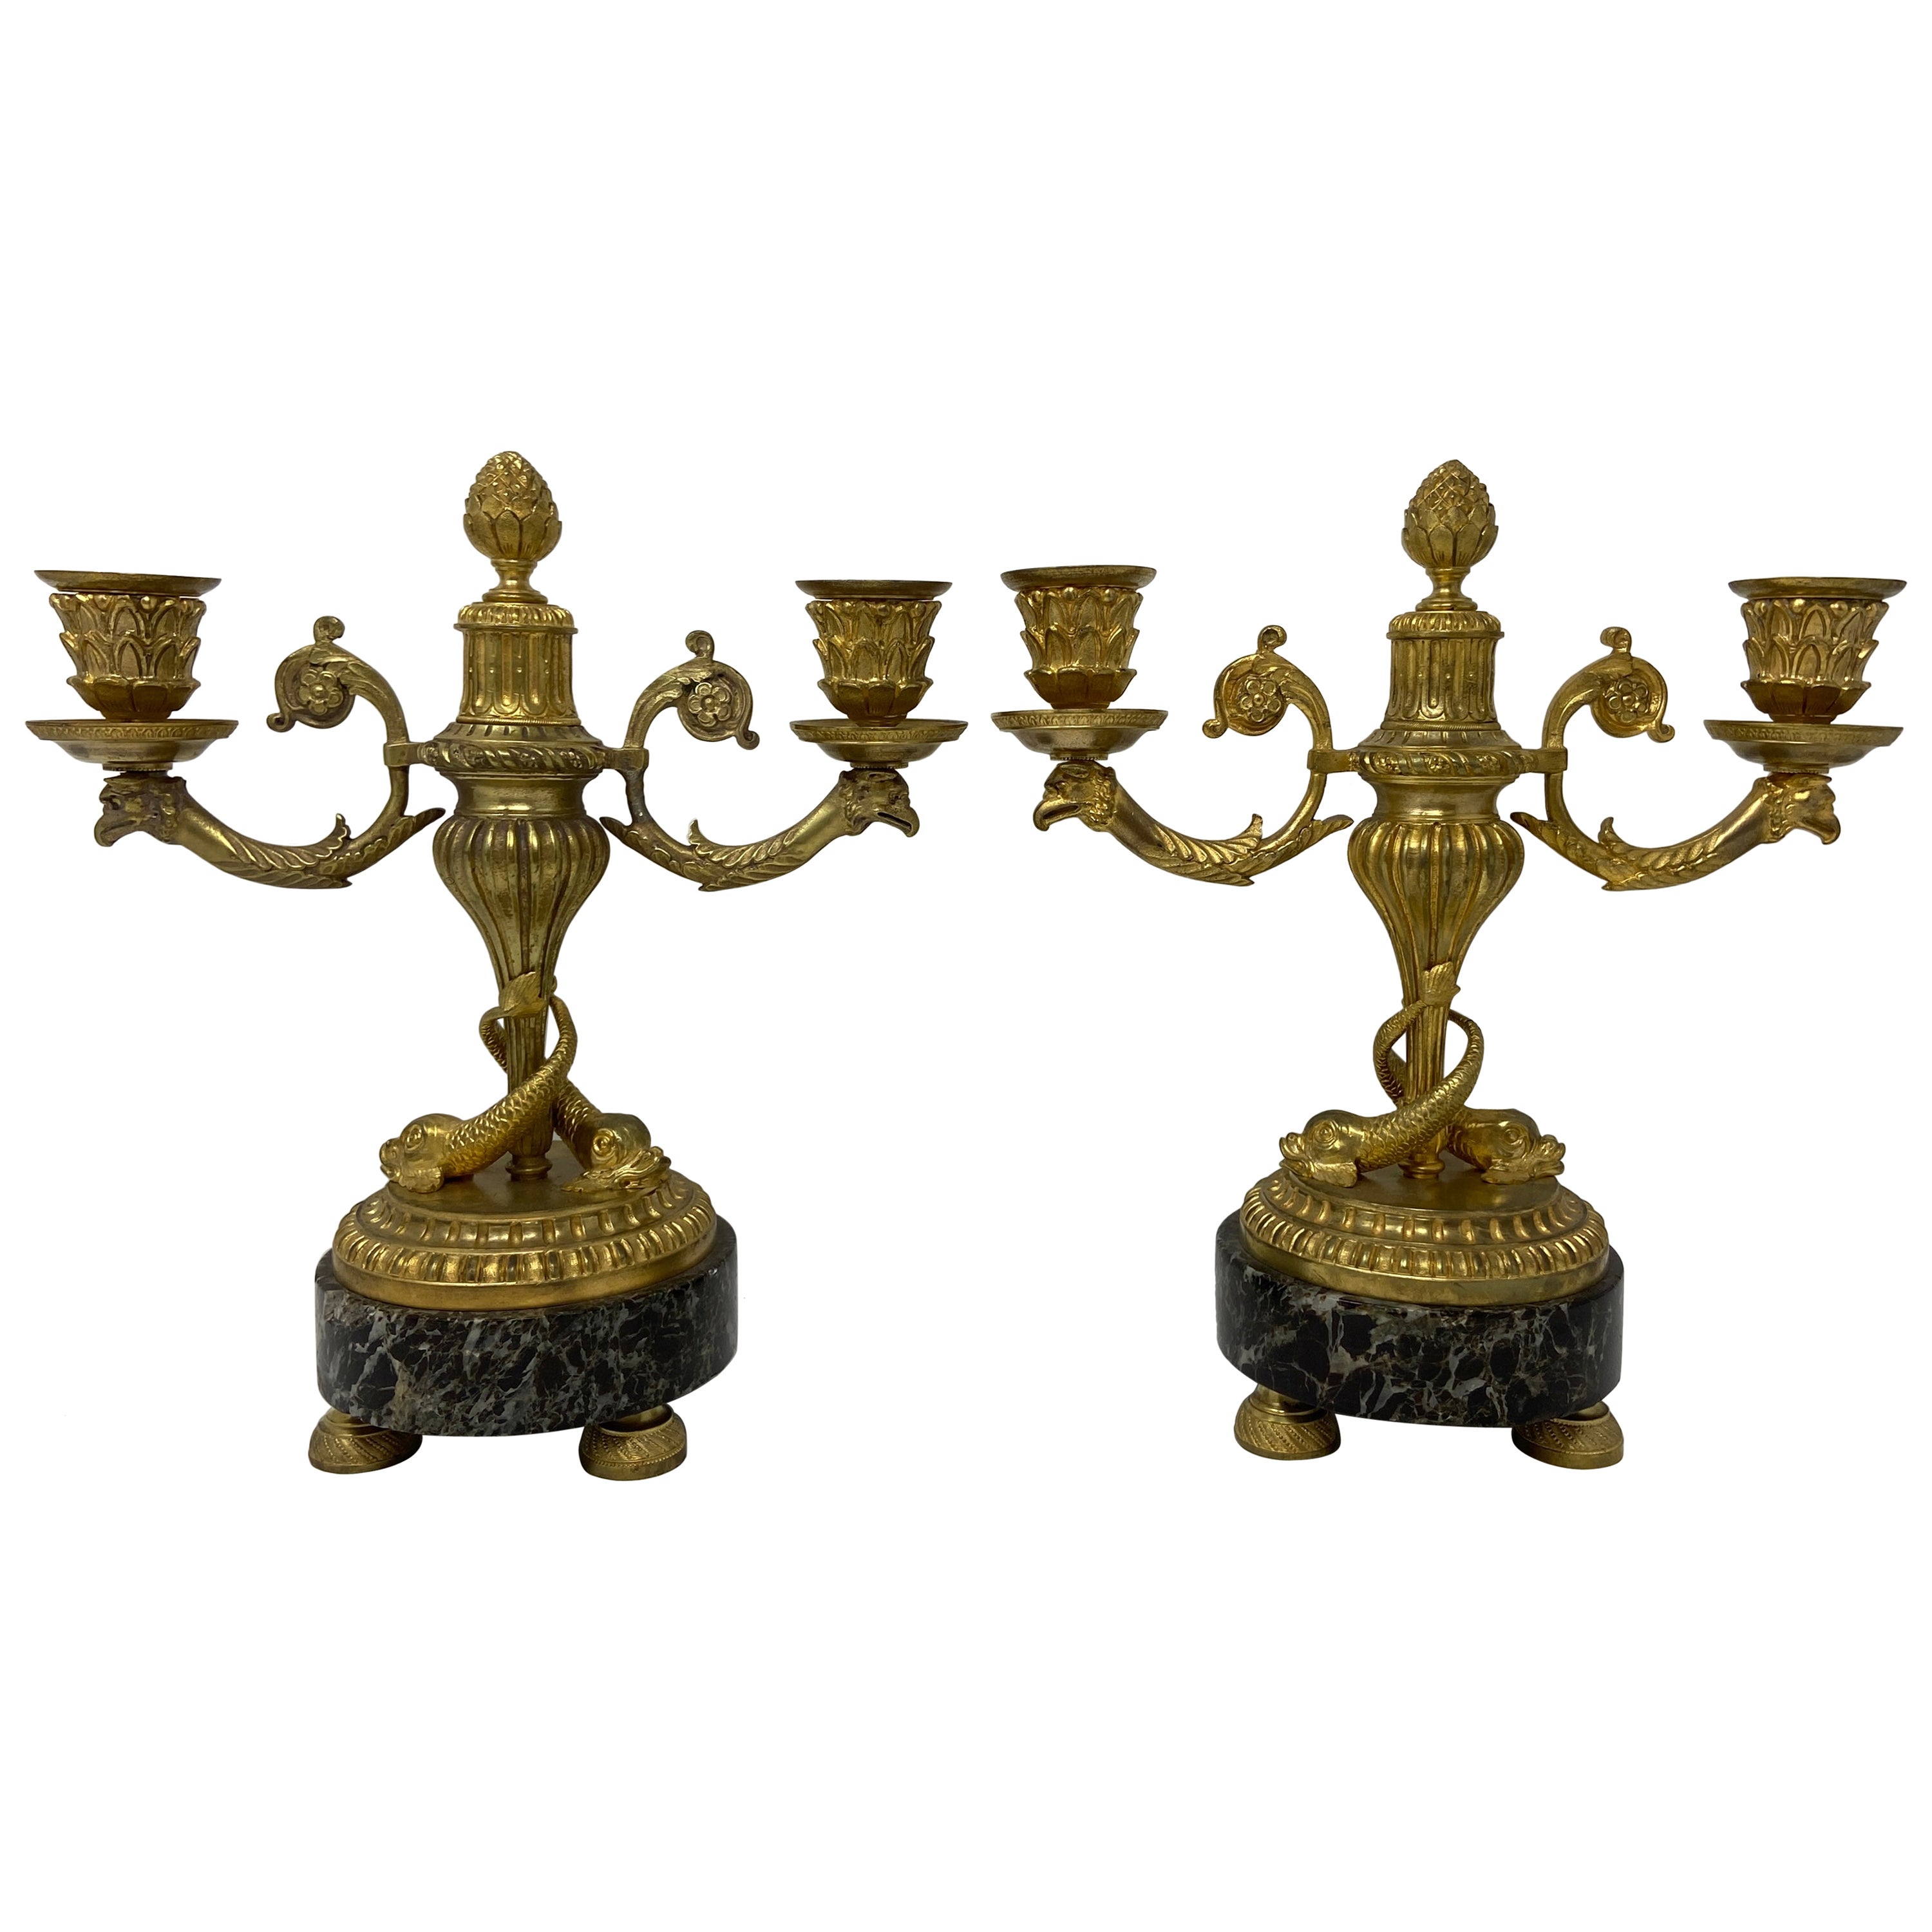 Paire de candélabres français anciens en bronze doré sur socle en marbre vert, vers 1885.